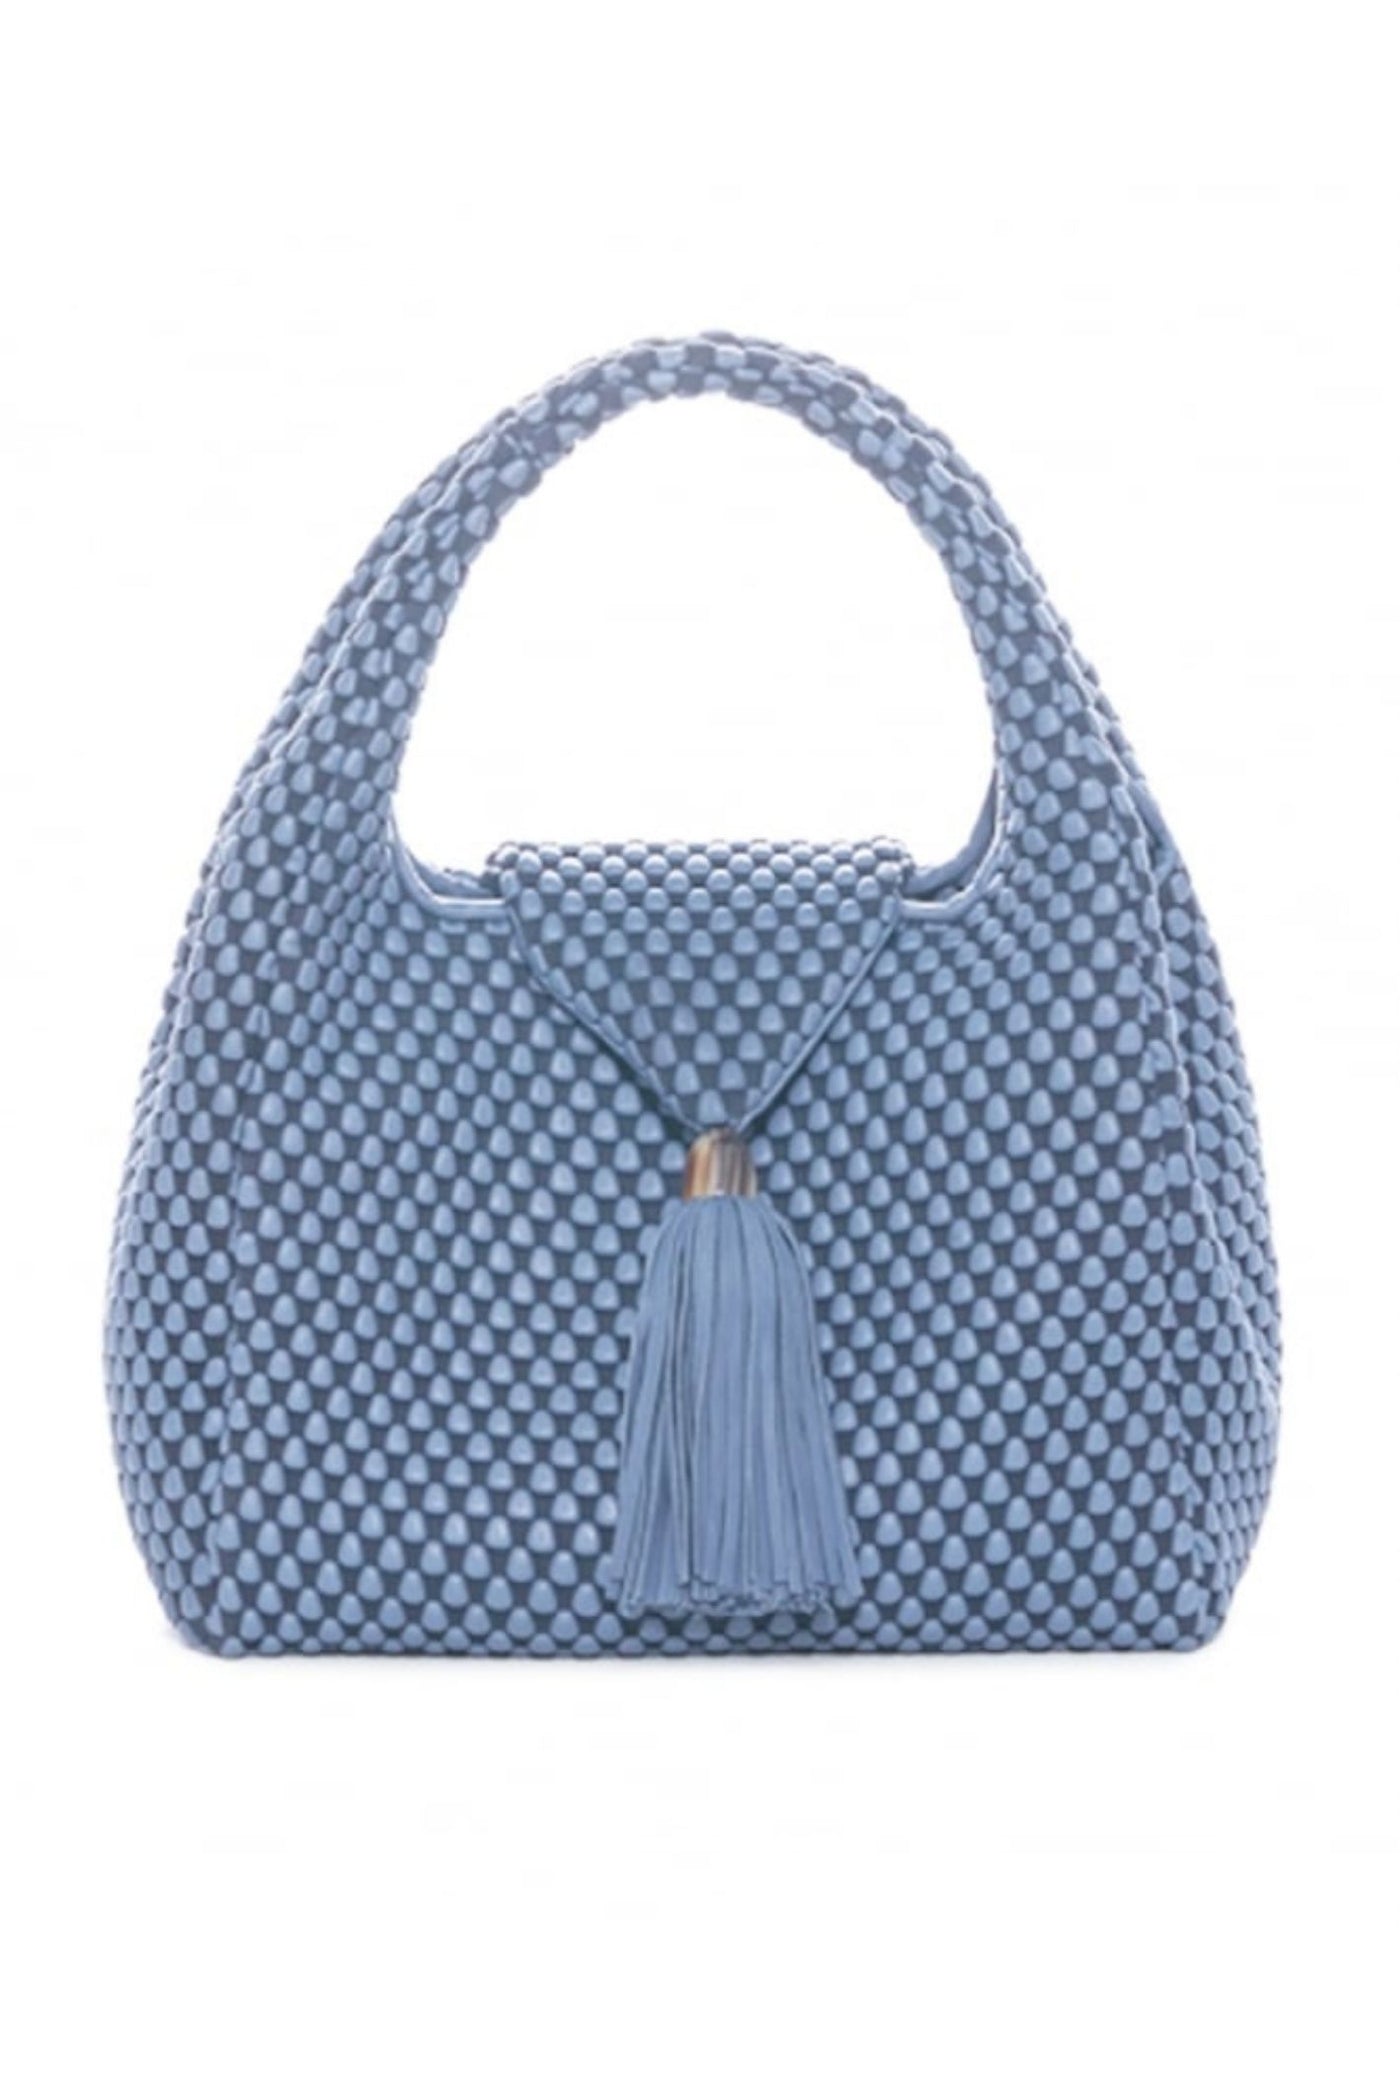 Tissa Fontaneda B09T Simple Matter Handbag Blue